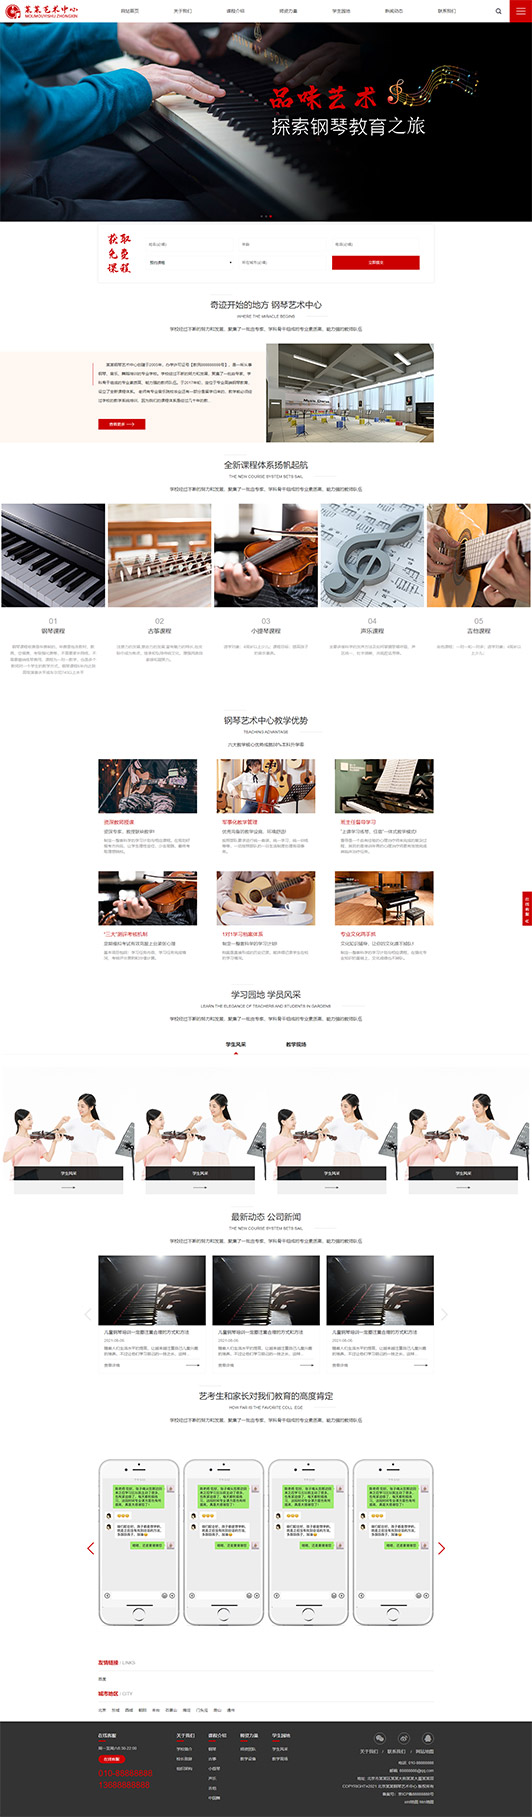 黄石钢琴艺术培训公司响应式企业网站